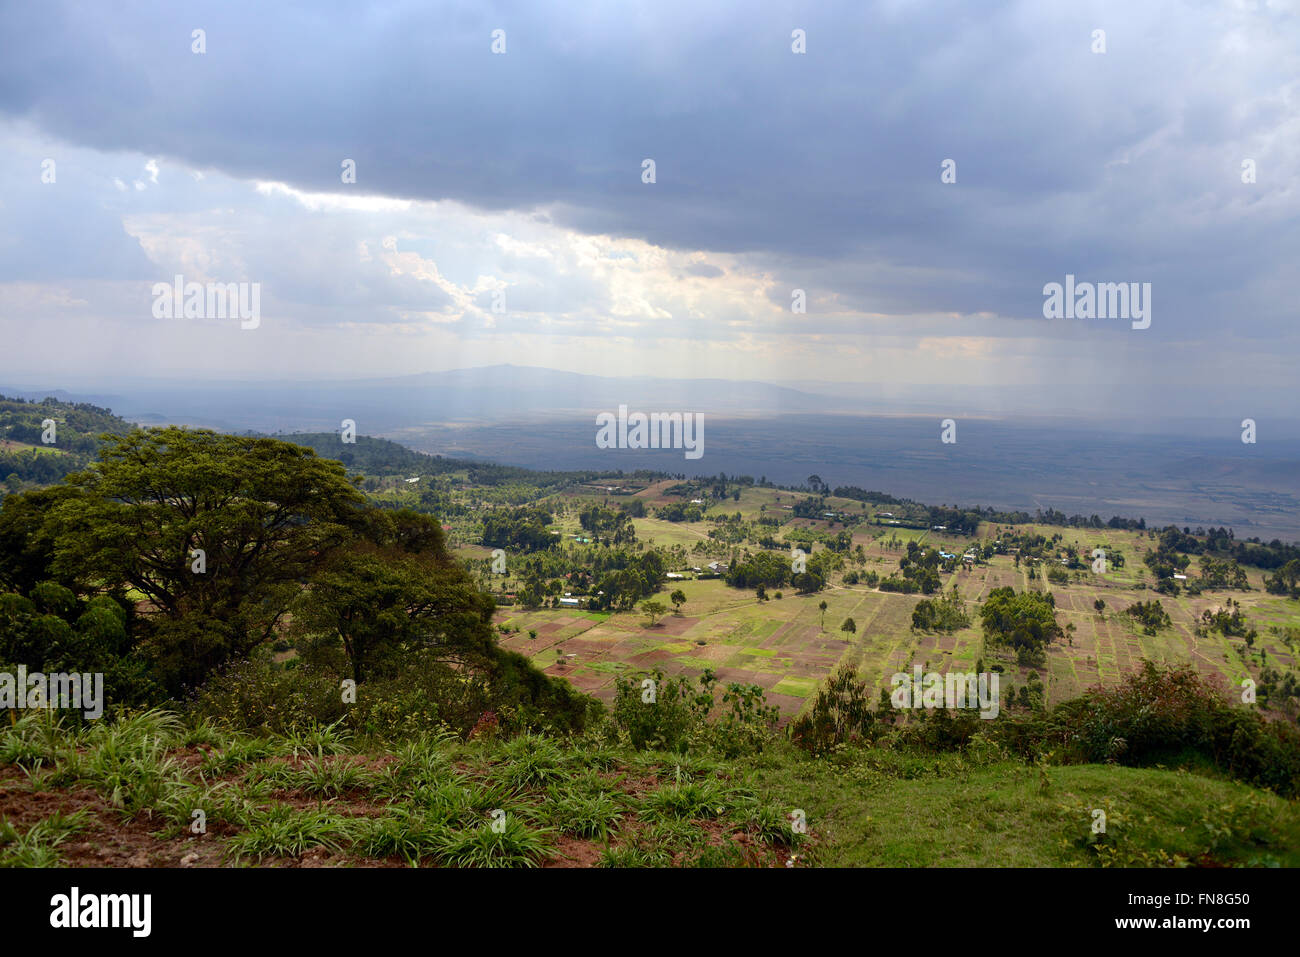 Afrika: Kenia: The East African Rift Valley Nord-West von Limuru über die bewirtschafteten Terrassen in Richtung Ngong Hills und Naivasha schauen Stockfoto